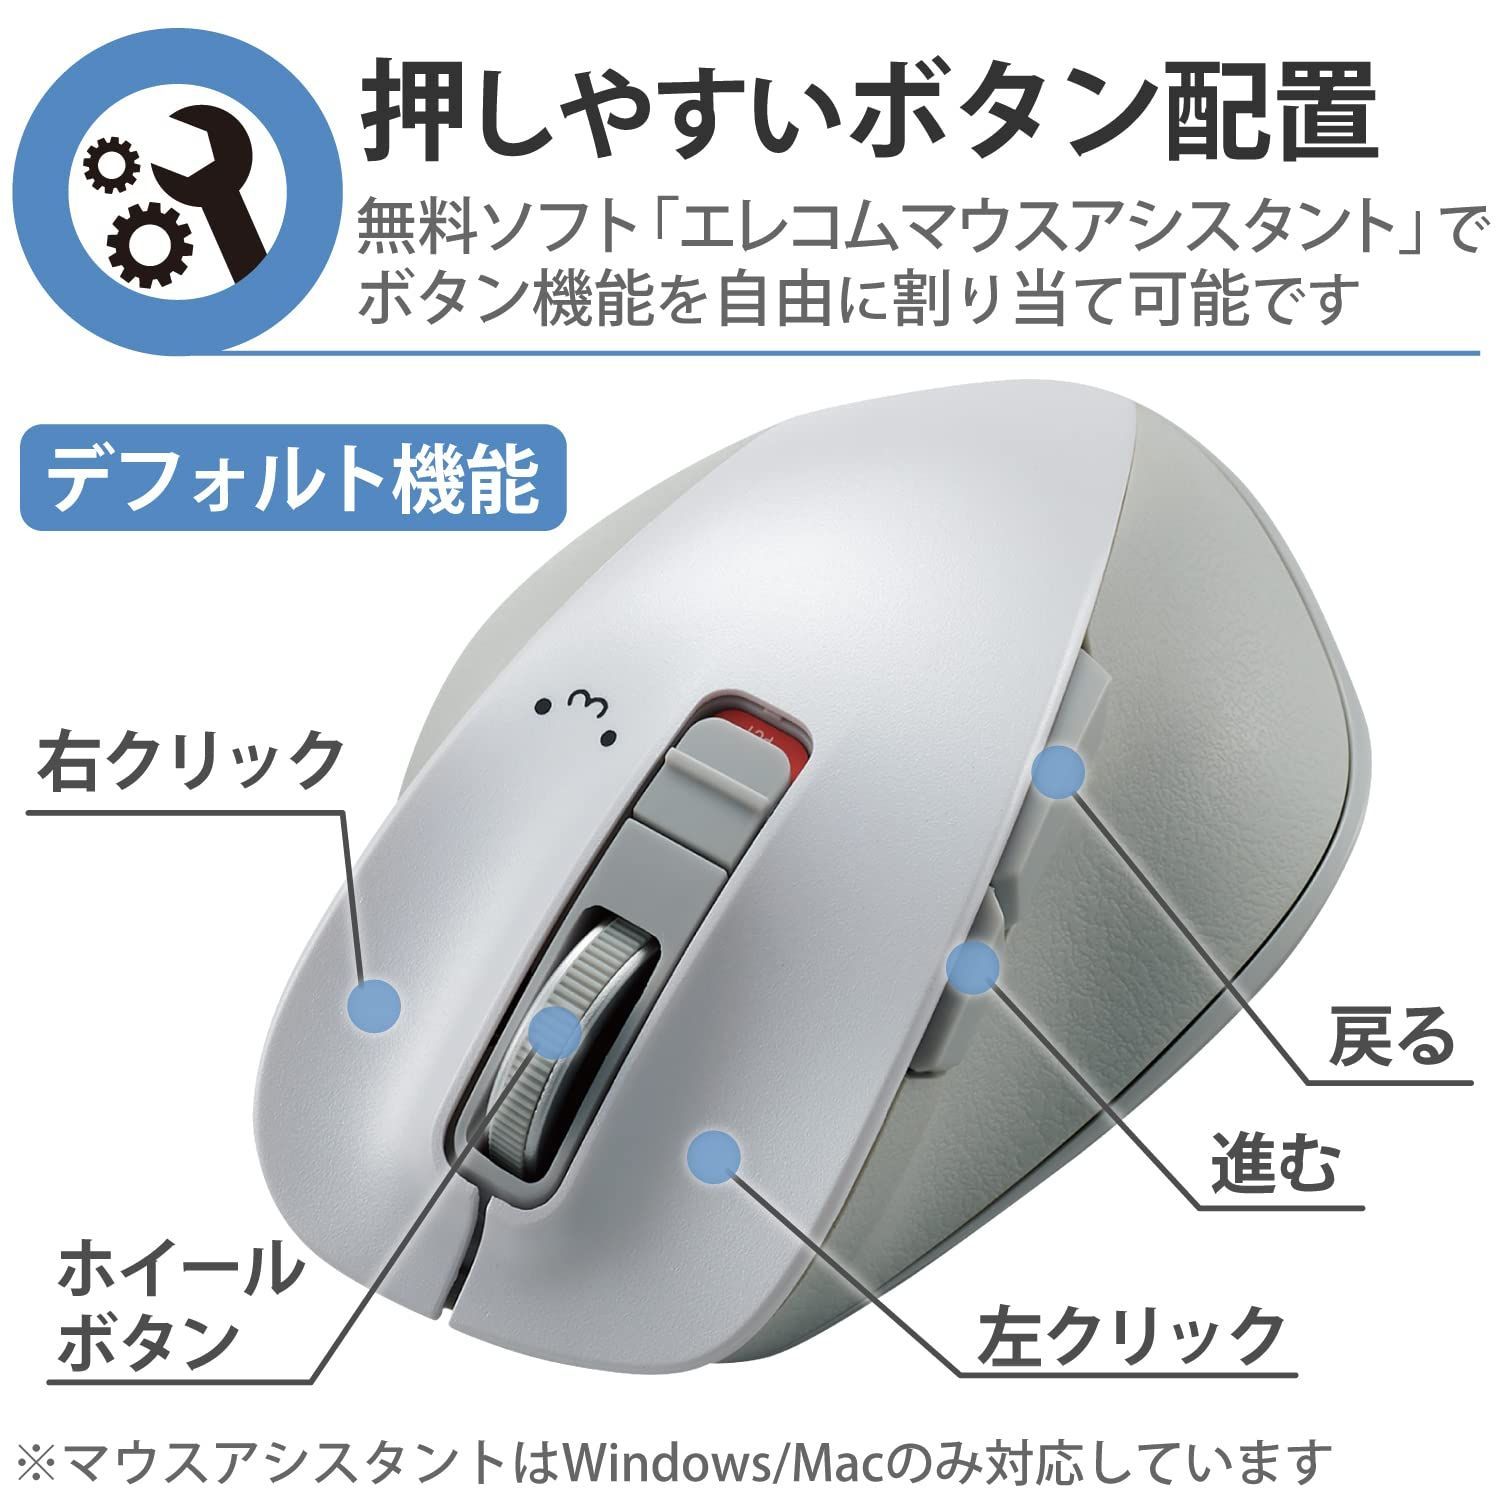 エレコム ワイヤレスマウス Bluetooth EX-G 握りの極み 静音設計 5ボタン マルチペアリング 端末2台切替可 Mサイズ ガンメタリ